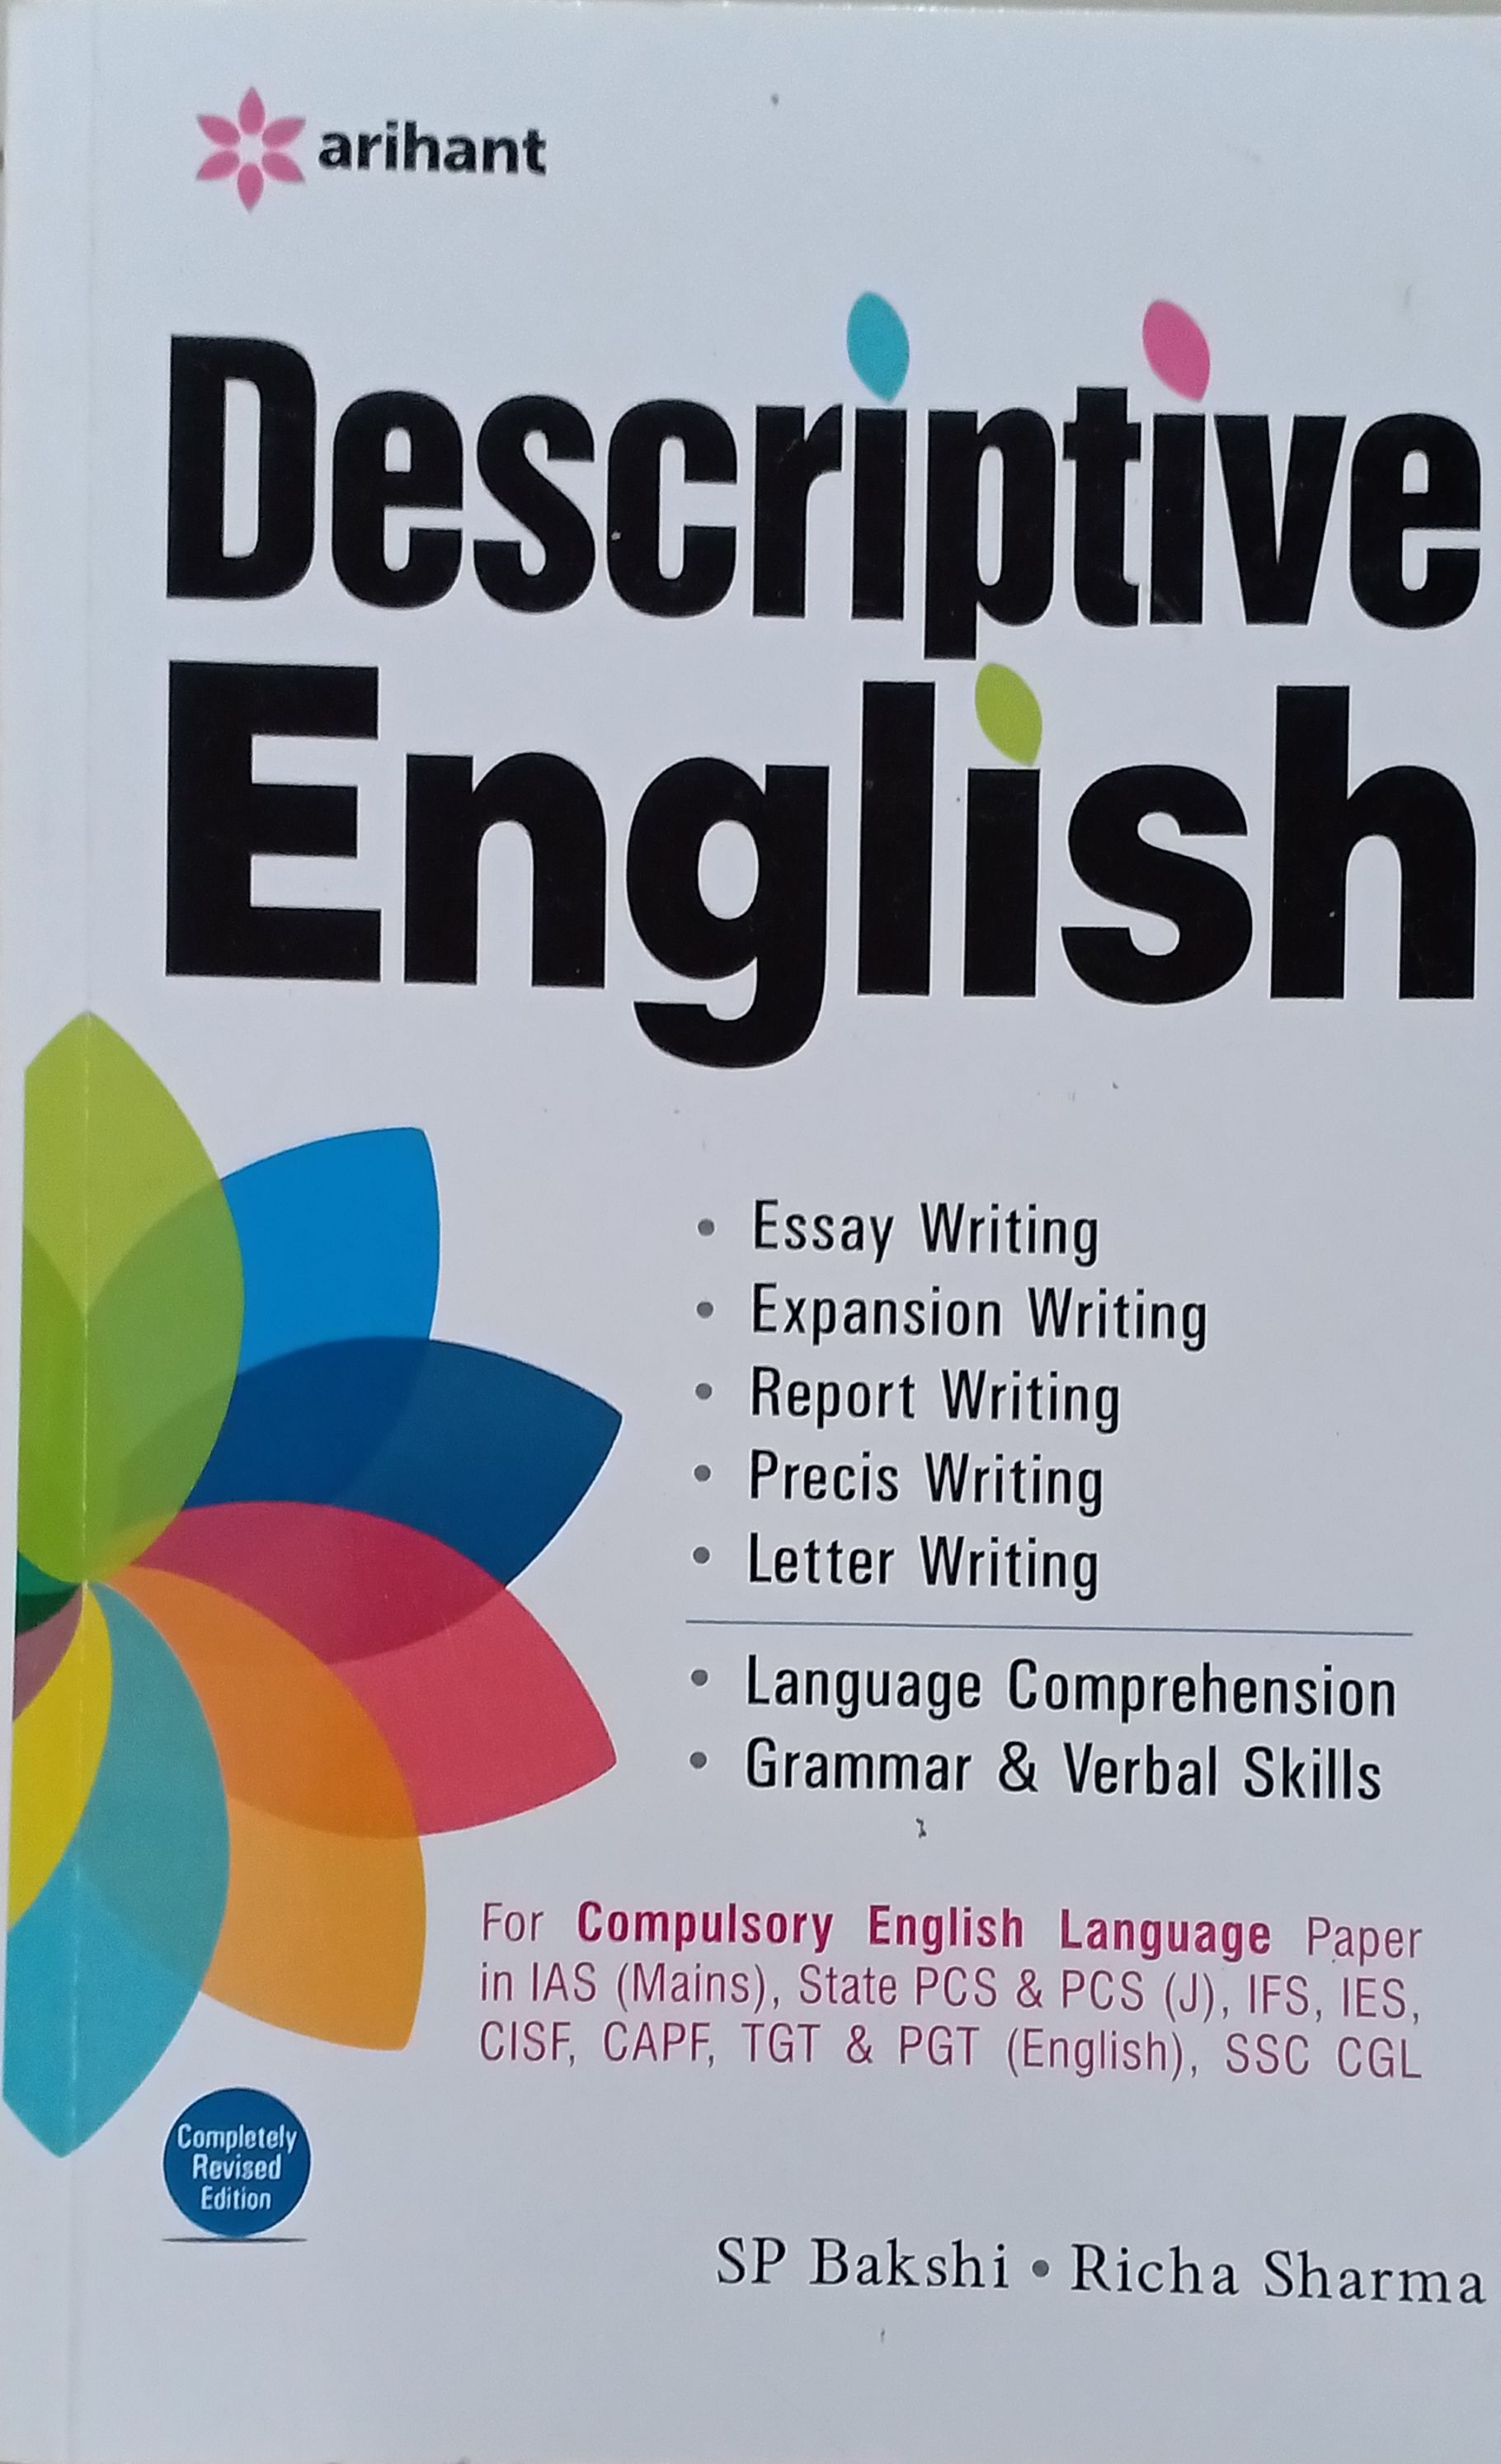 Descriptive English